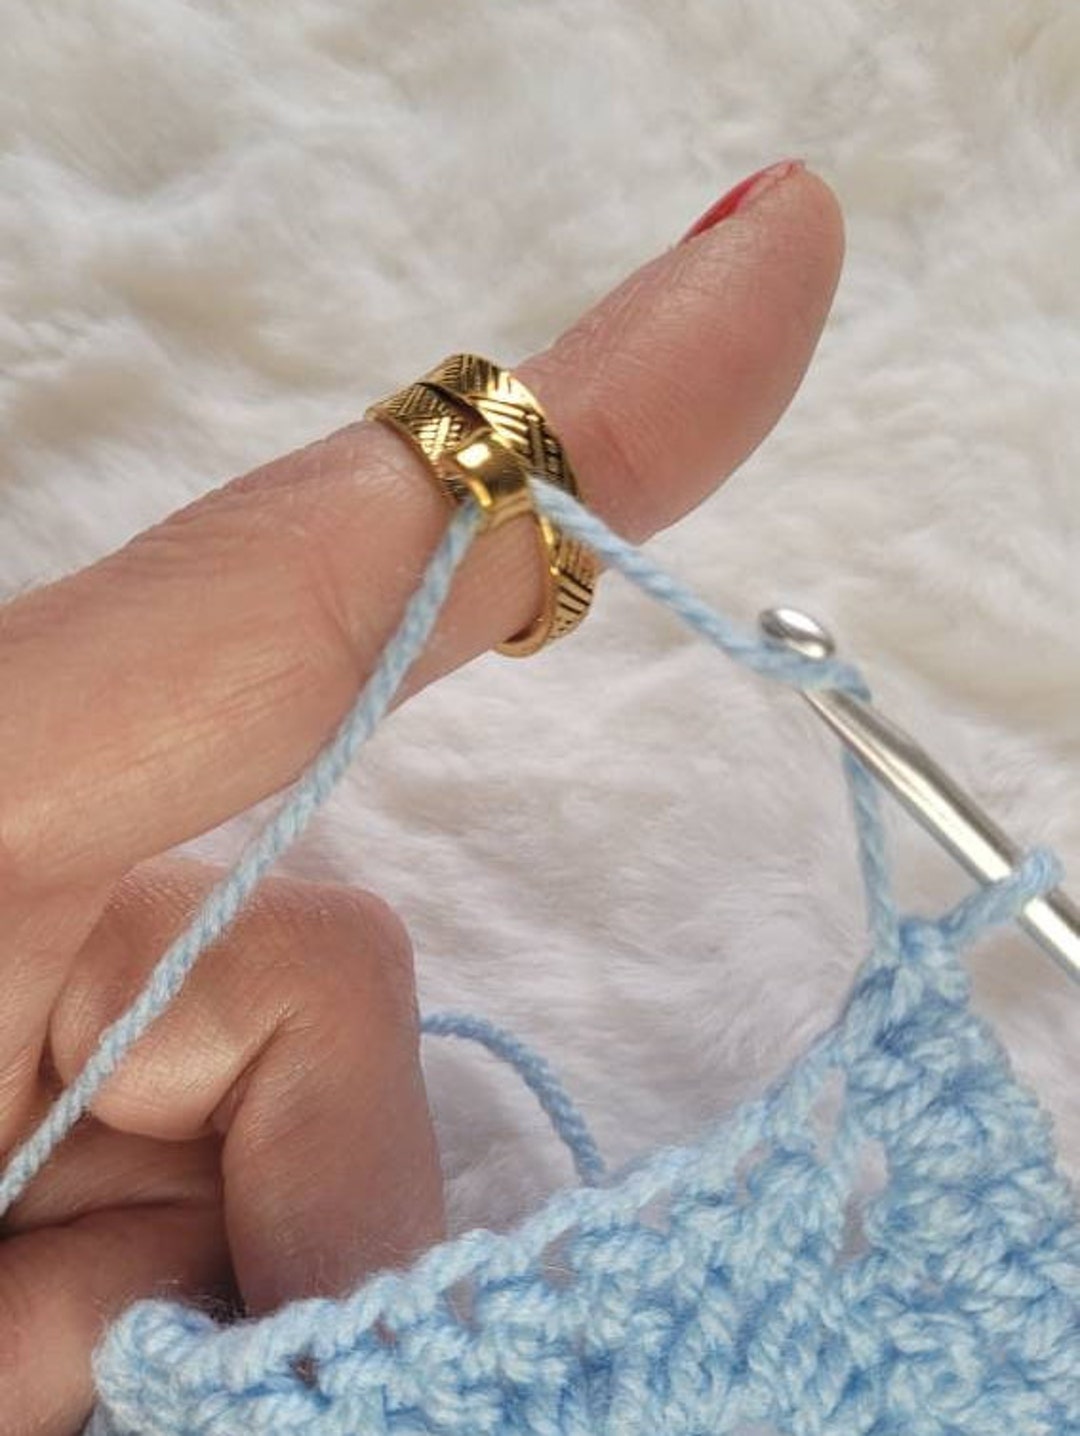 Yarn holder ring? : r/crochet